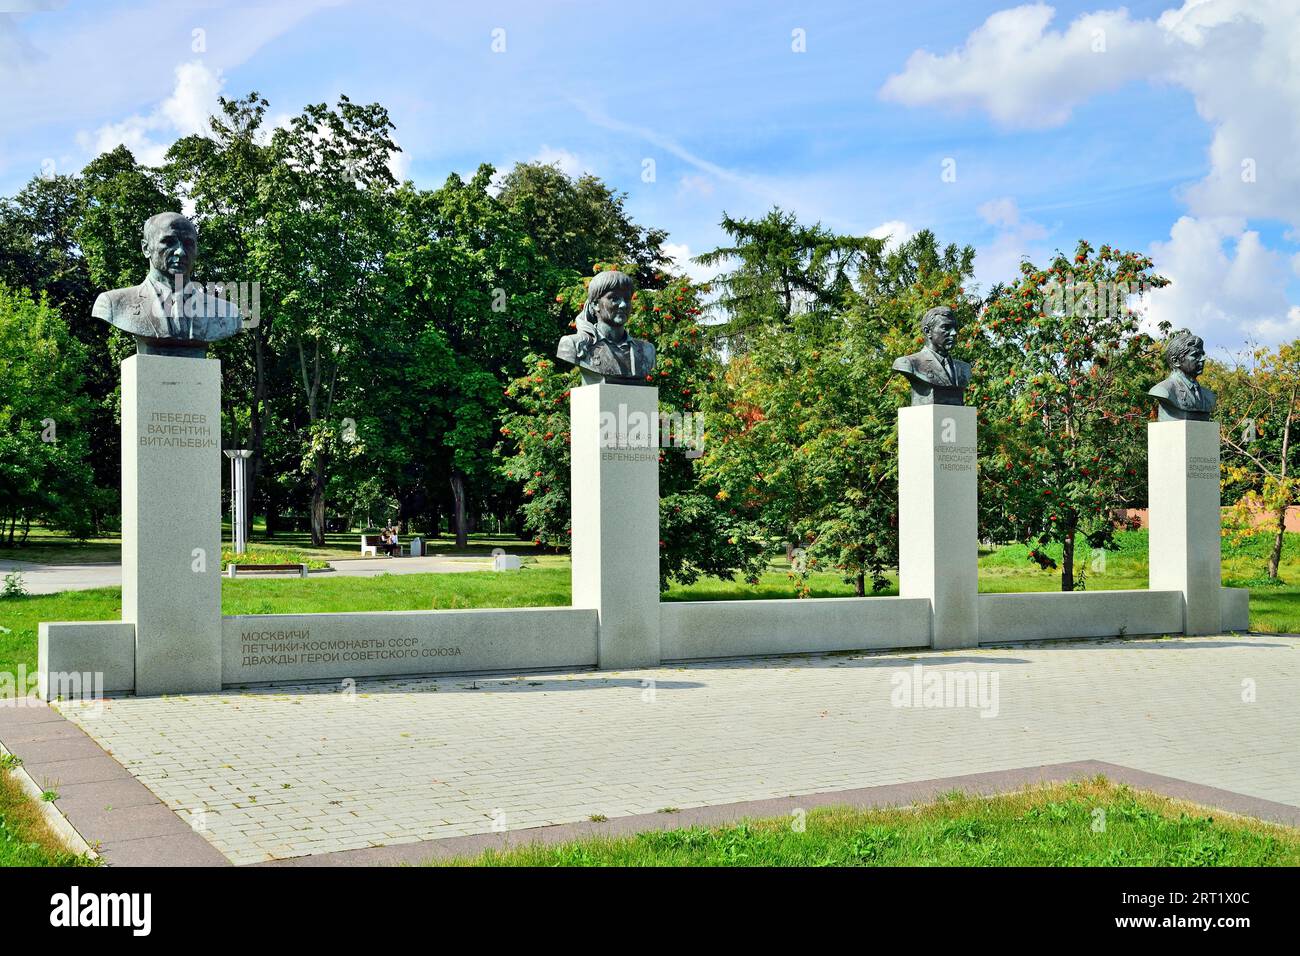 Mosca, Russia, 25 agosto 2020: monumento agli abitanti di Mosca piloti-cosmonauti dell'URSS, due eroi dell'Unione Sovietica. Museo di Foto Stock